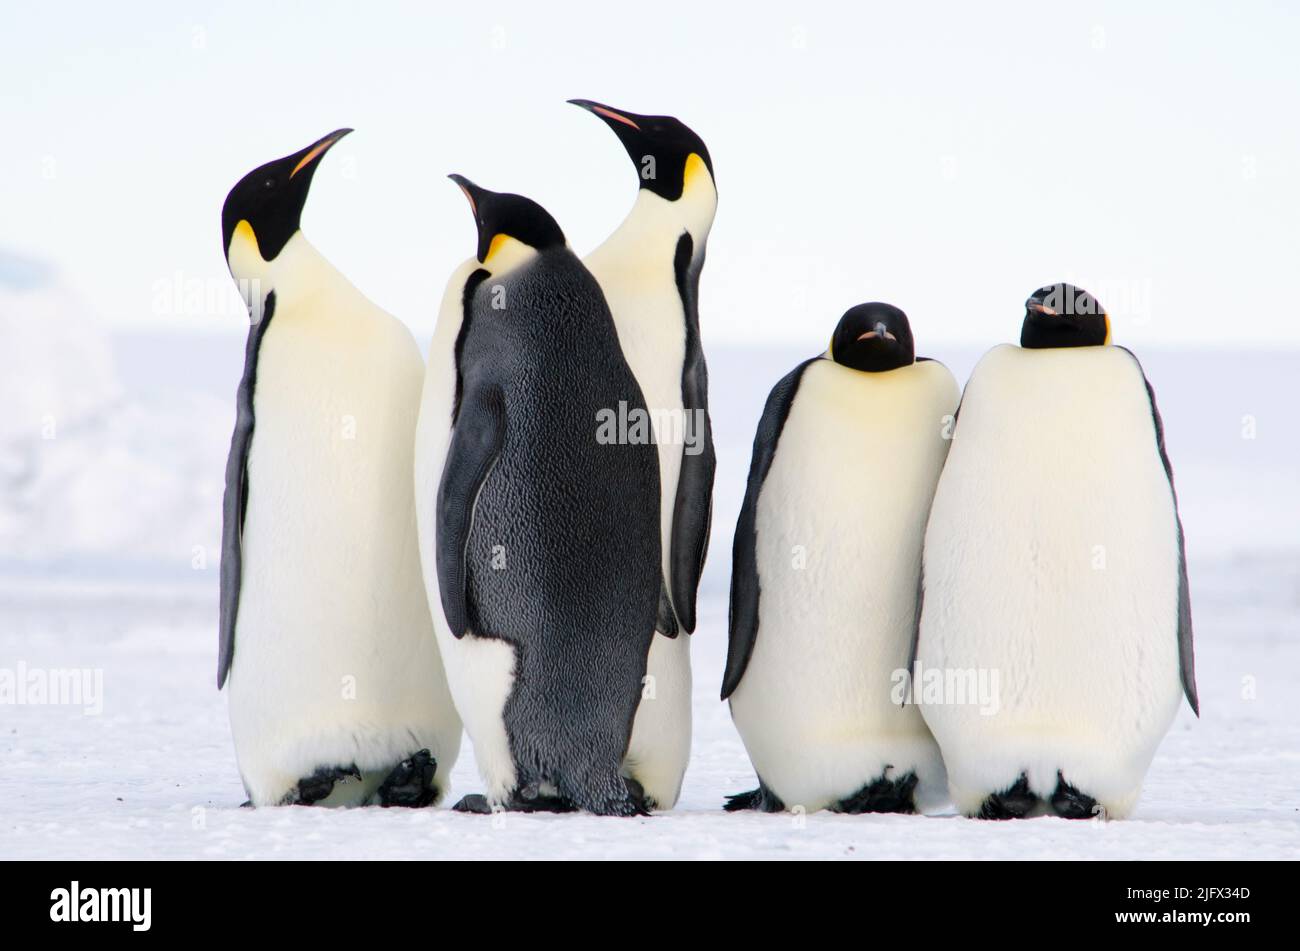 Kaiserpinguine, die größte aller lebenden Pinguinarten, werden auf diesem Foto in der Nähe der Erebus Bay in der Antarktis festgehalten. Der Kaiserpinguin (Aptenodytes forsteri) ist die höchste und schwerste aller lebenden Pinguinarten und endemisch in der Antarktis. Bildnachweis: W.Link/USGS (Bildgenehmigung Nr. 1032-1917) Stockfoto